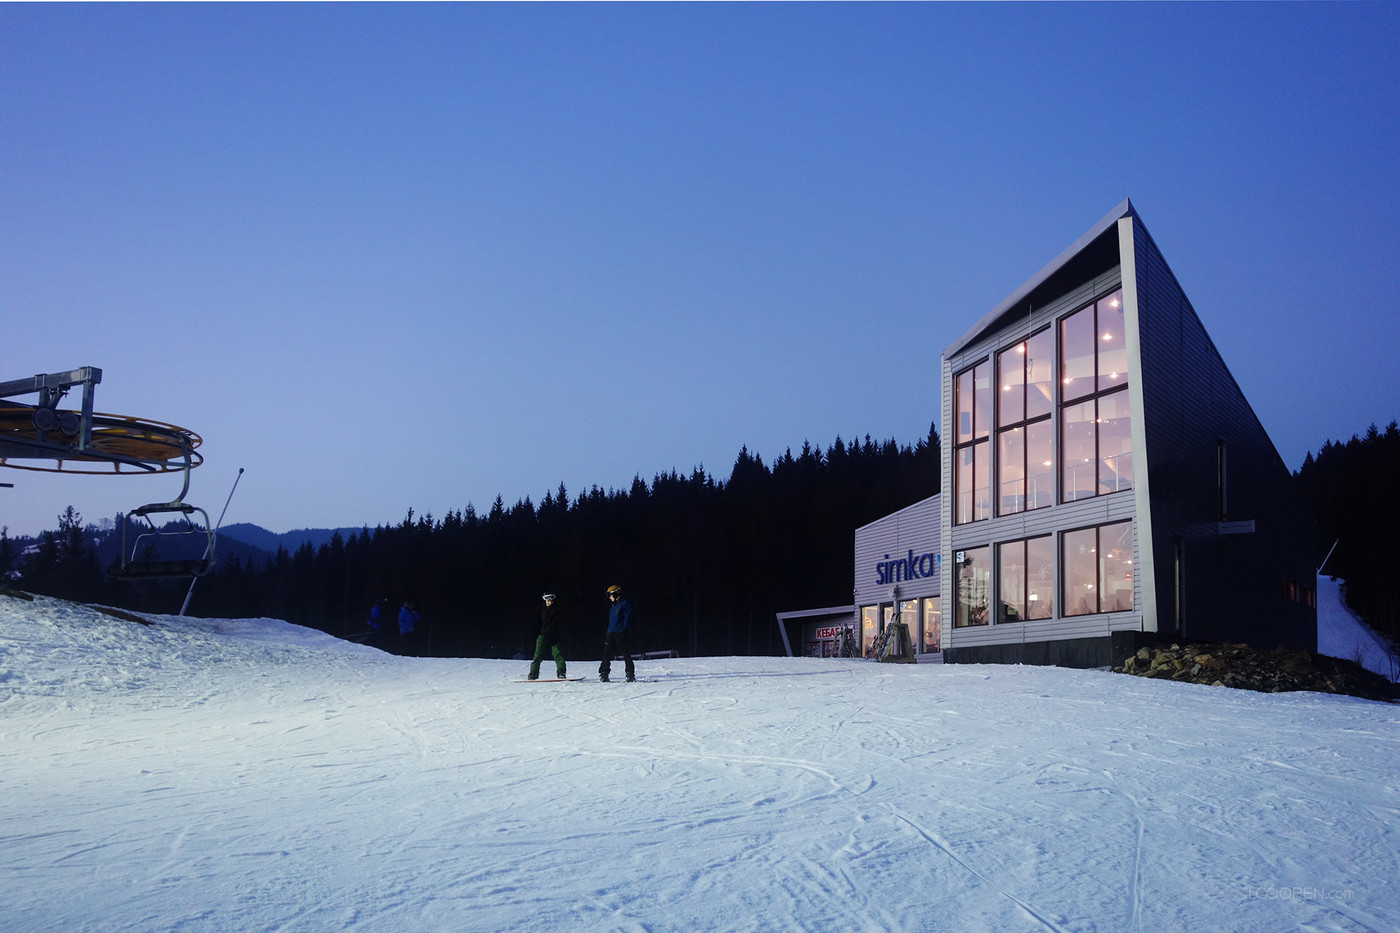 户外滑雪场餐厅酒吧建筑设计作品-01